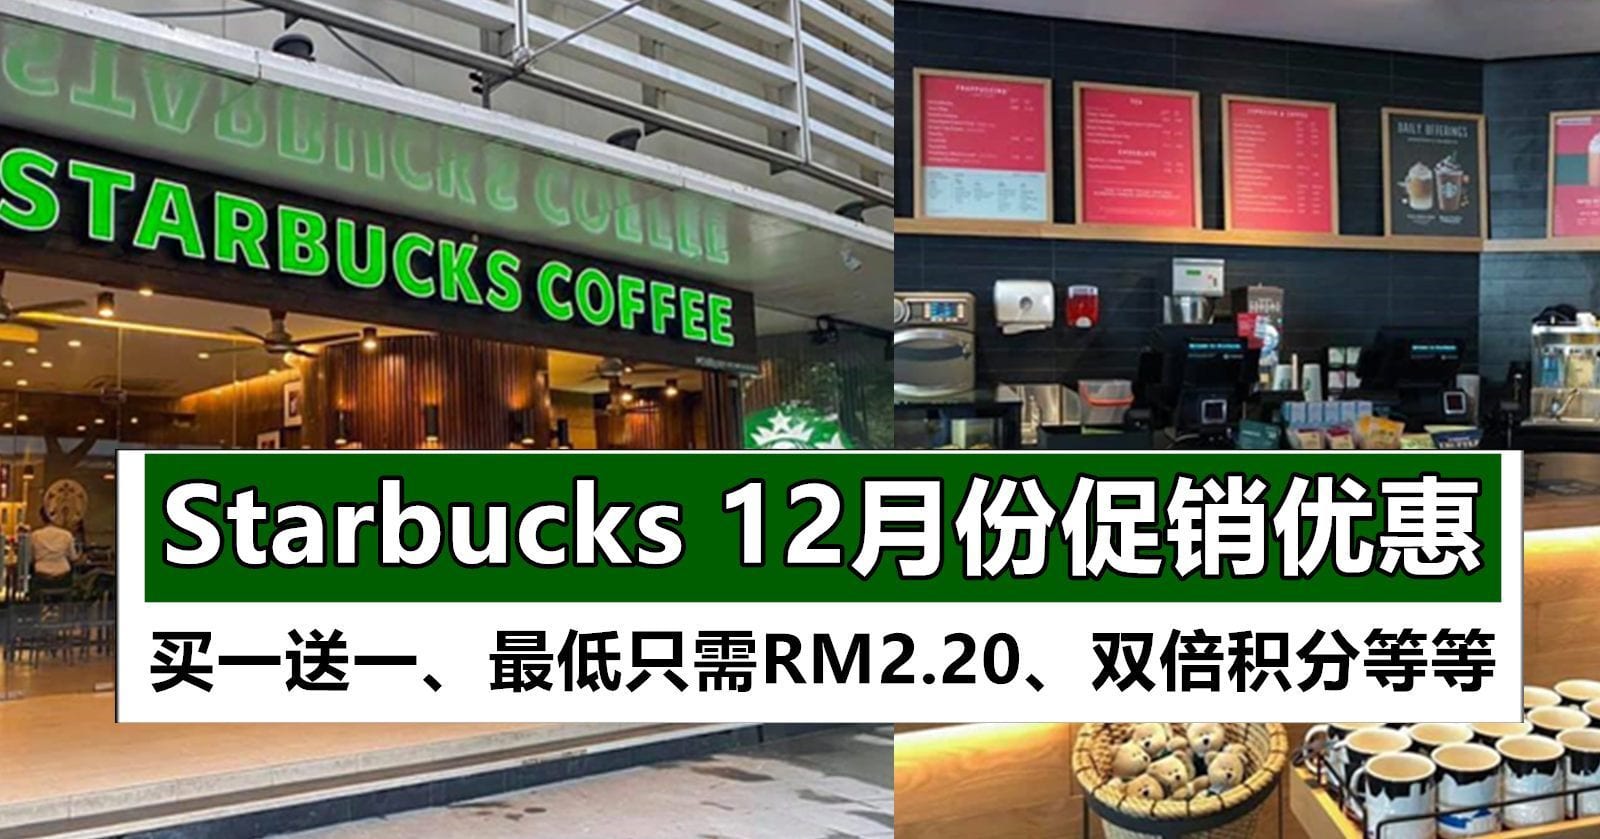 12月份Starbucks 促销，买一送一、一杯饮料最低RM2.20等等